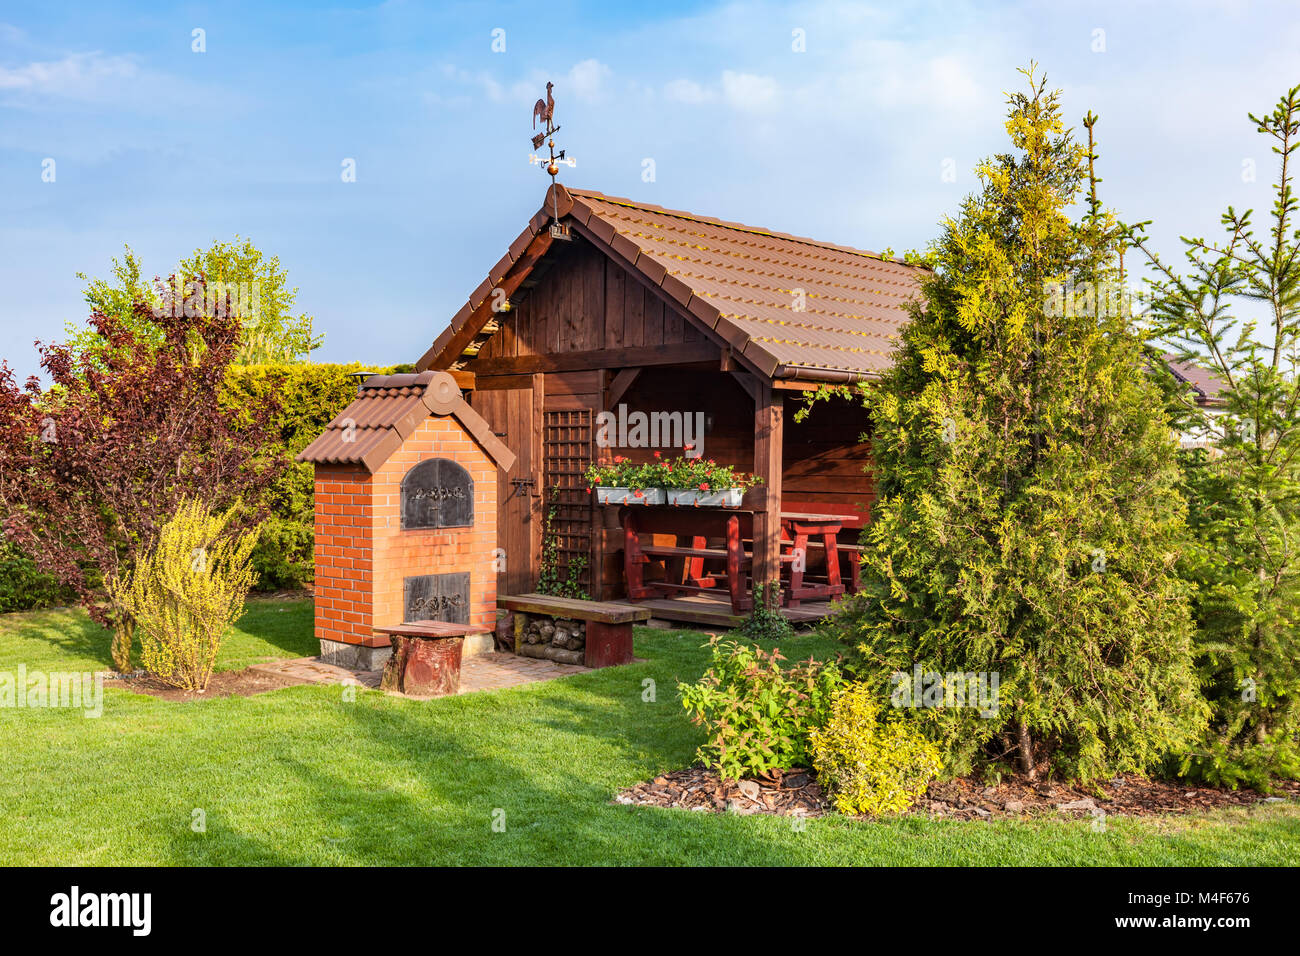 Ajardinado con barbacoa y jardín de verano casa de veraneo, como de madera Foto de stock